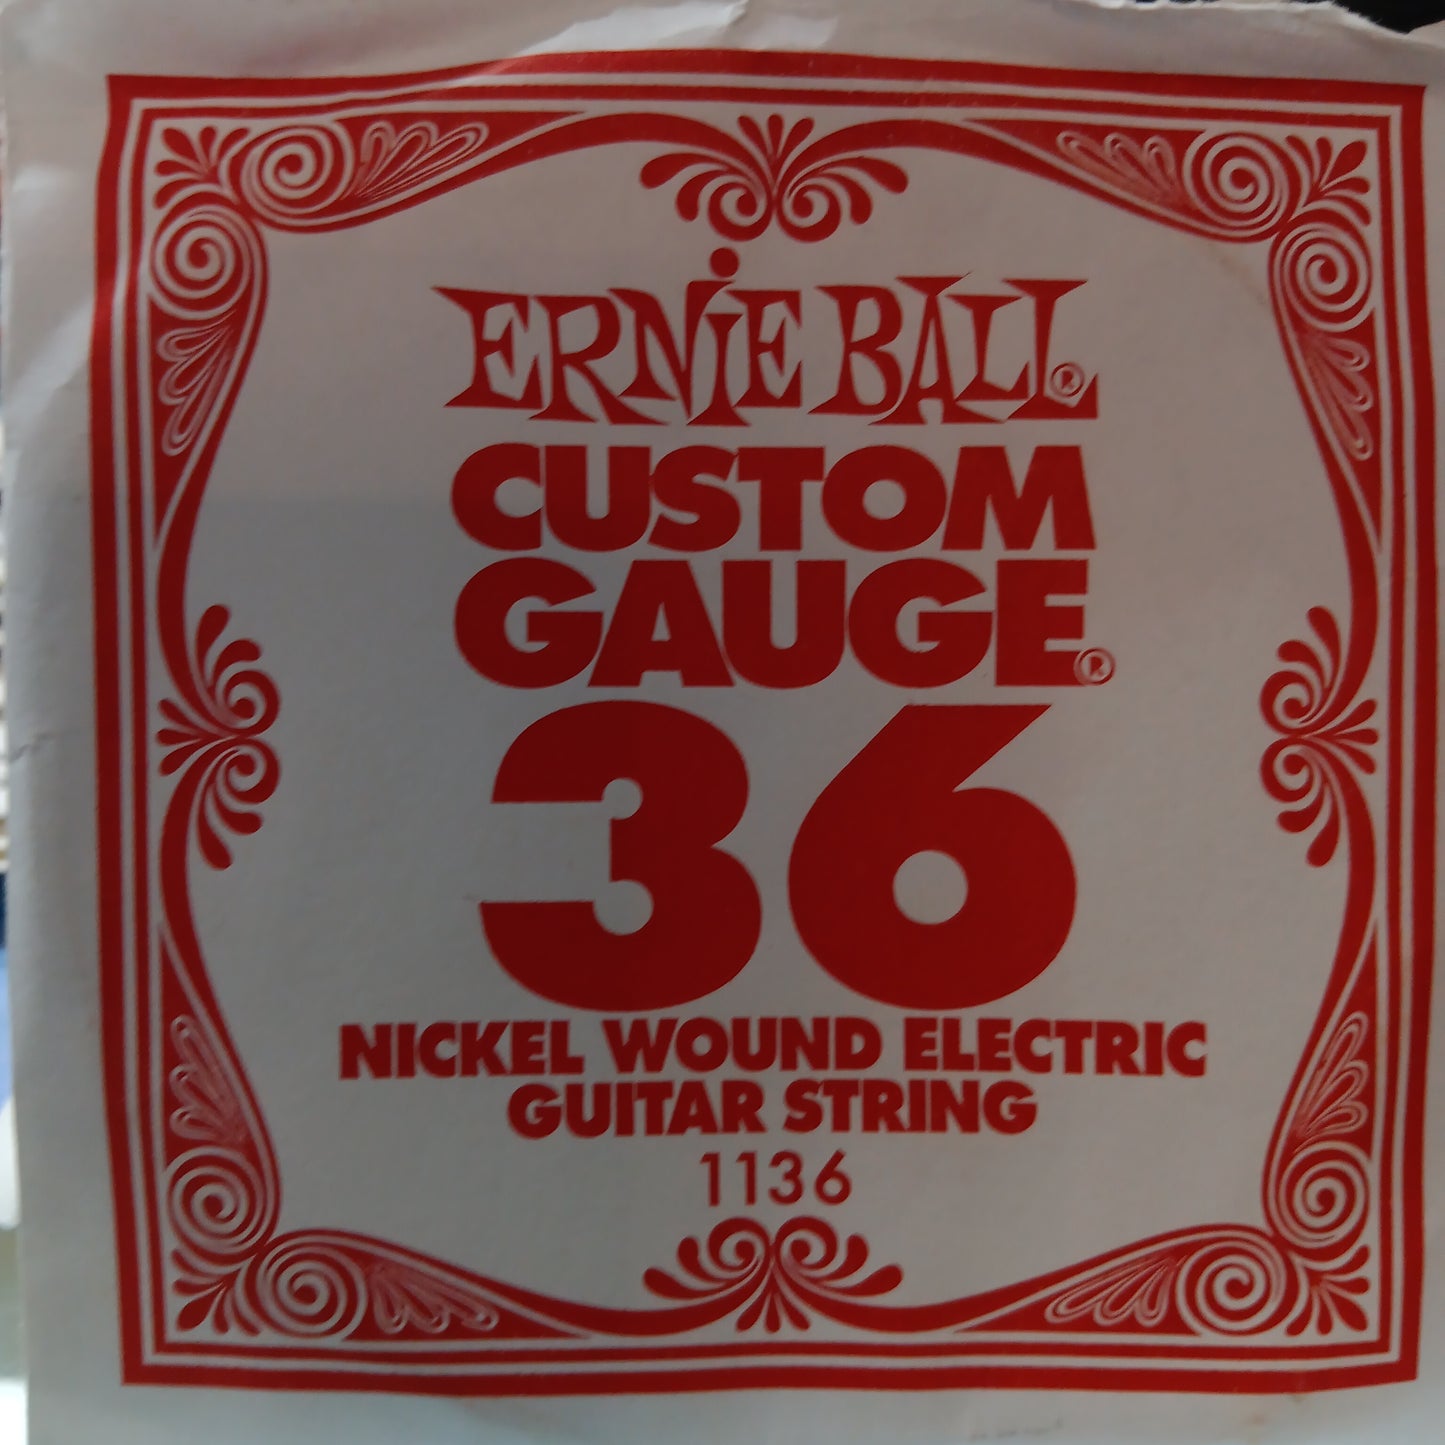 Ernie Ball Custom Gauge Nickel Wound Single Strings 1136/36 Gauge